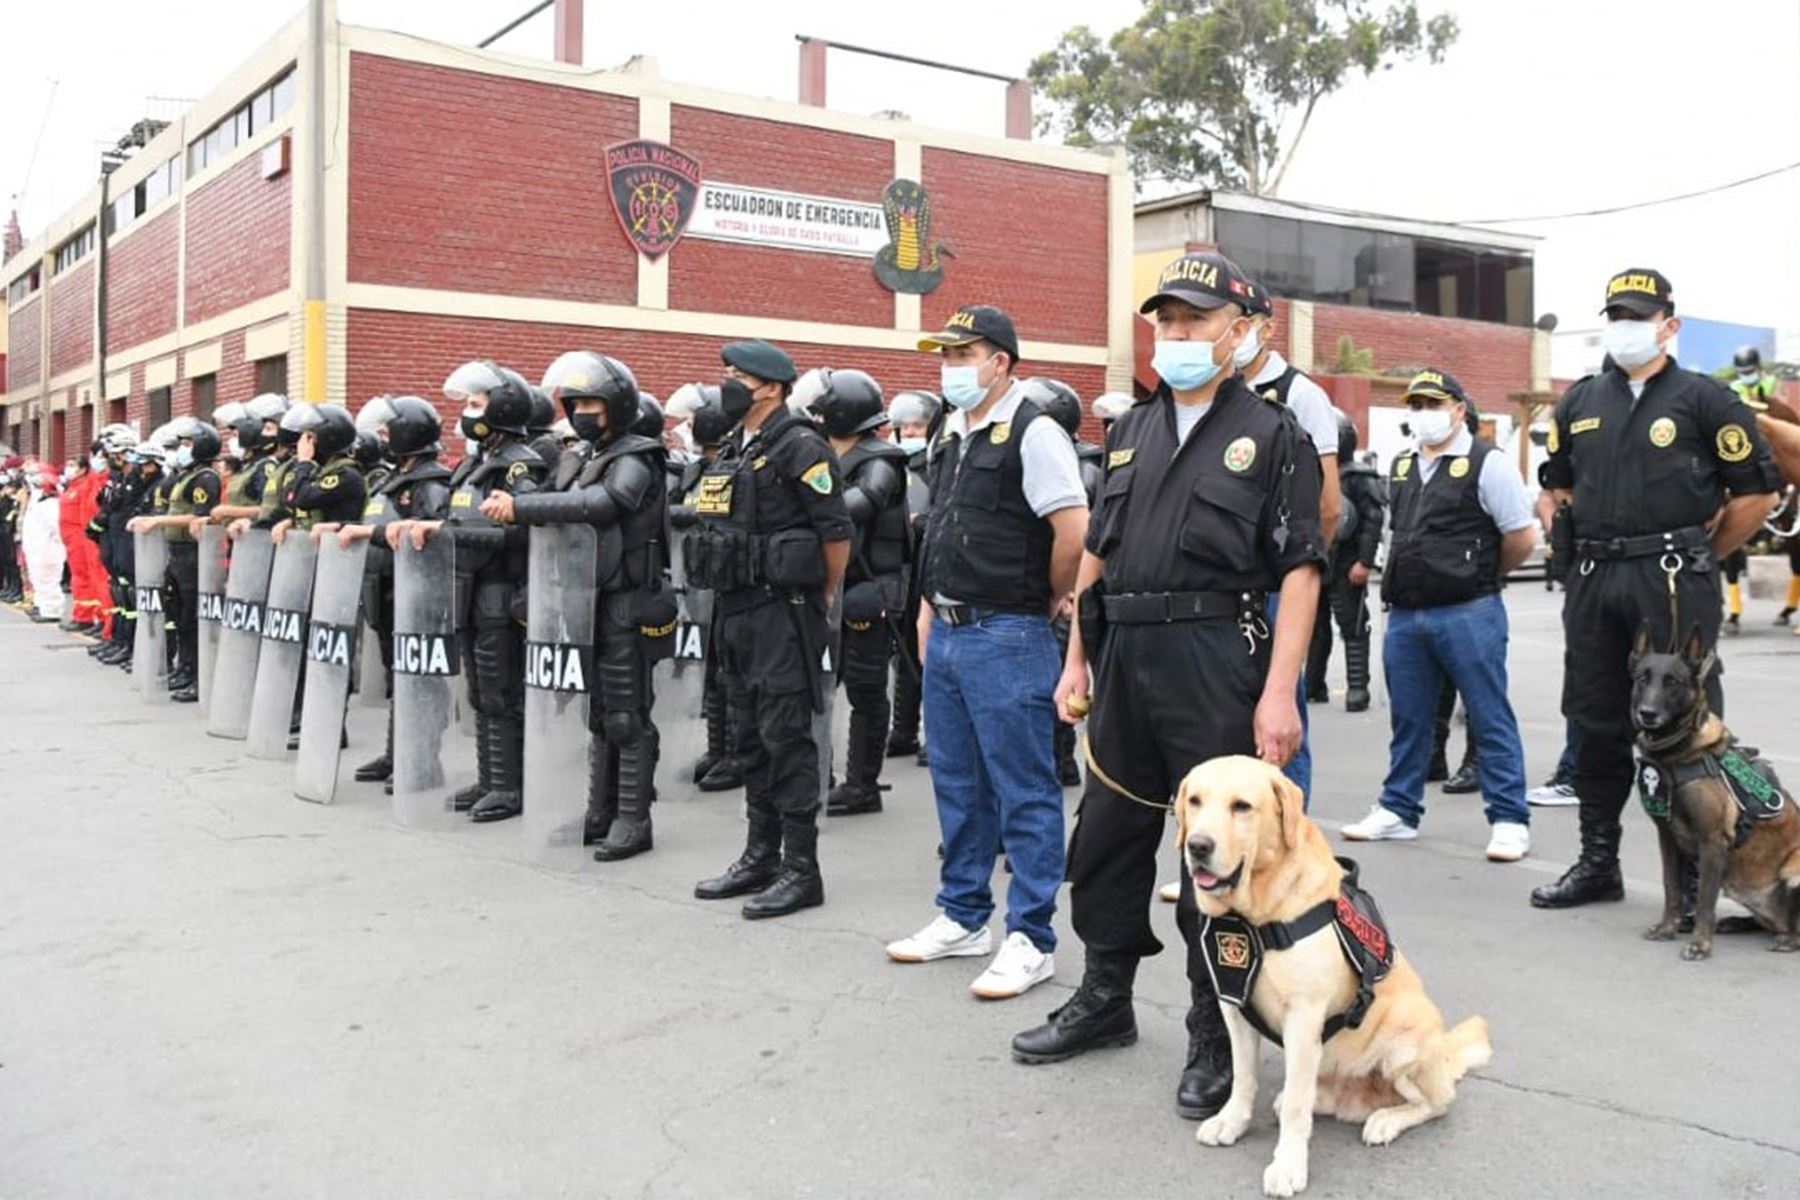 Policías que desempeñan labores en las dependencias policiales saldrán a cumplir labores de patrullaje. Foto: ANDINA/Difusión